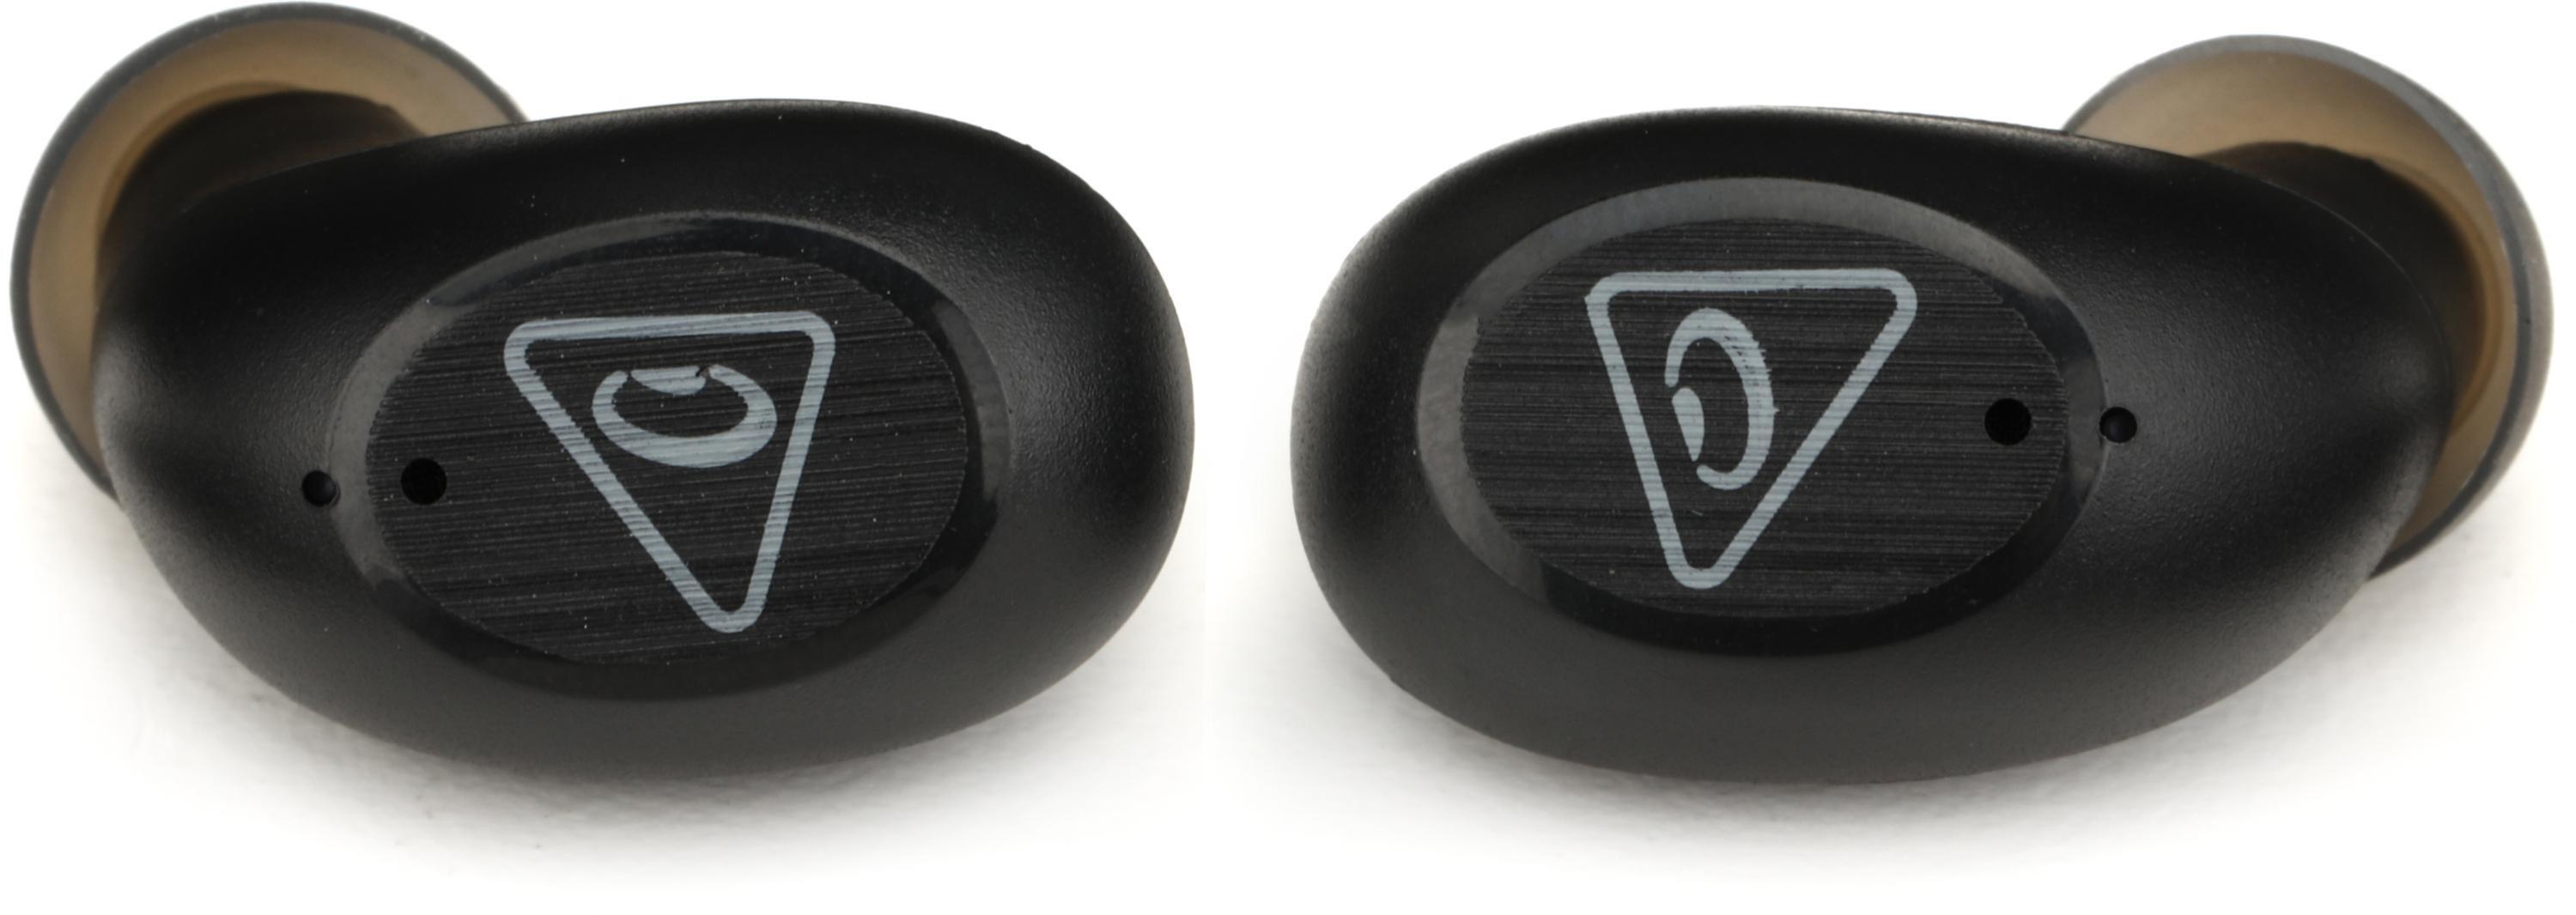 Truengine 3 SE True Wireless In-Ear HiFi Earbuds - SOUNDPEATS